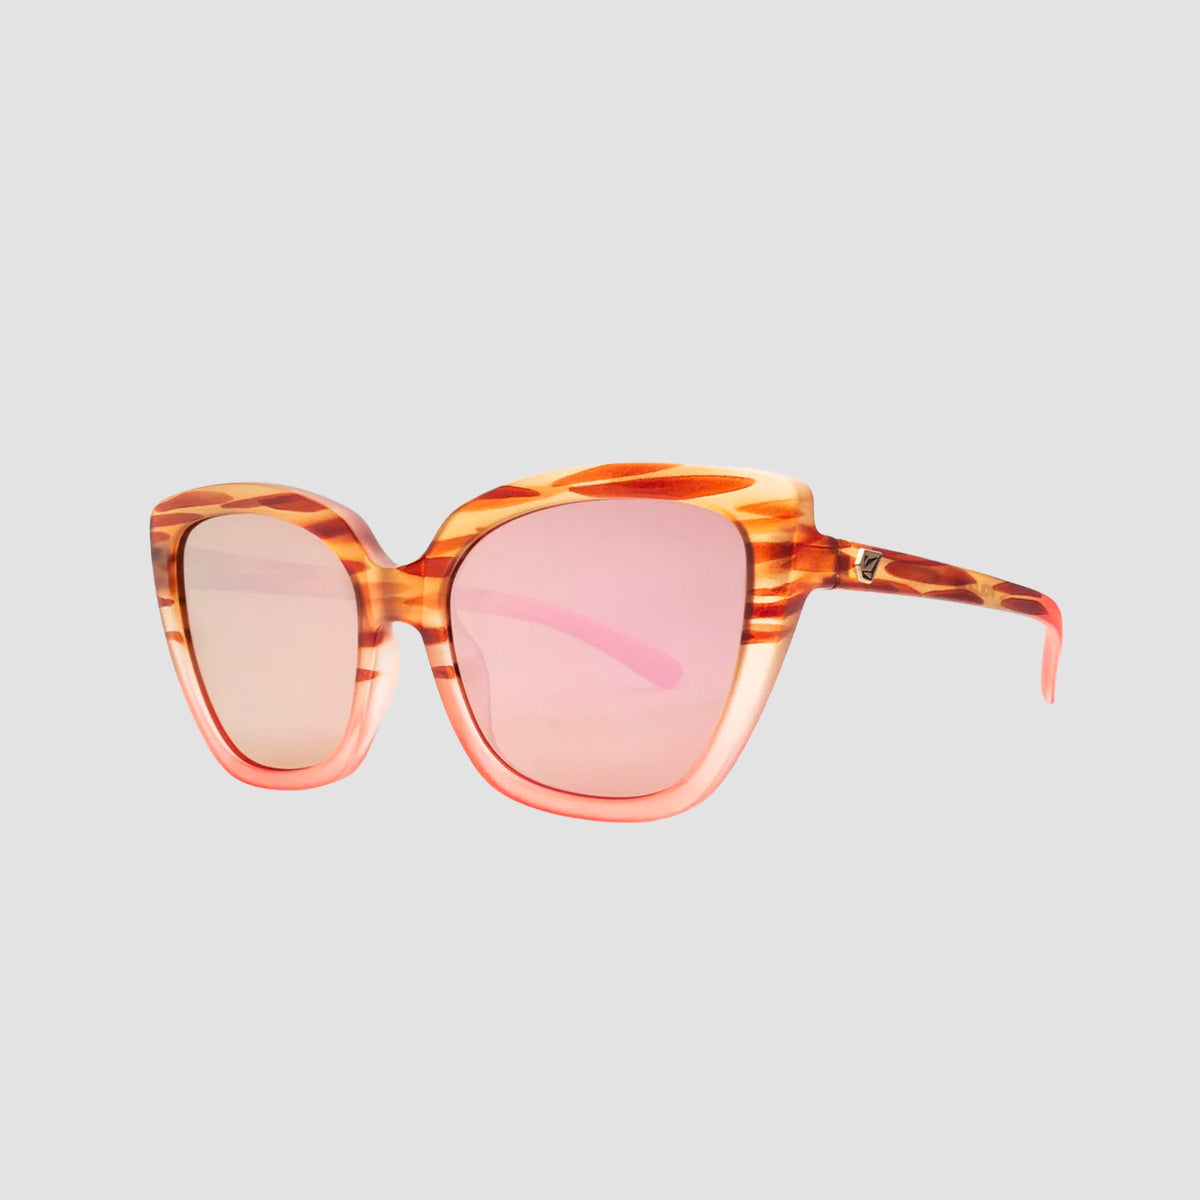 Volcom Milli Sunglasses Gloss Punk Tort/Bronze Champagne Chrome - Womens